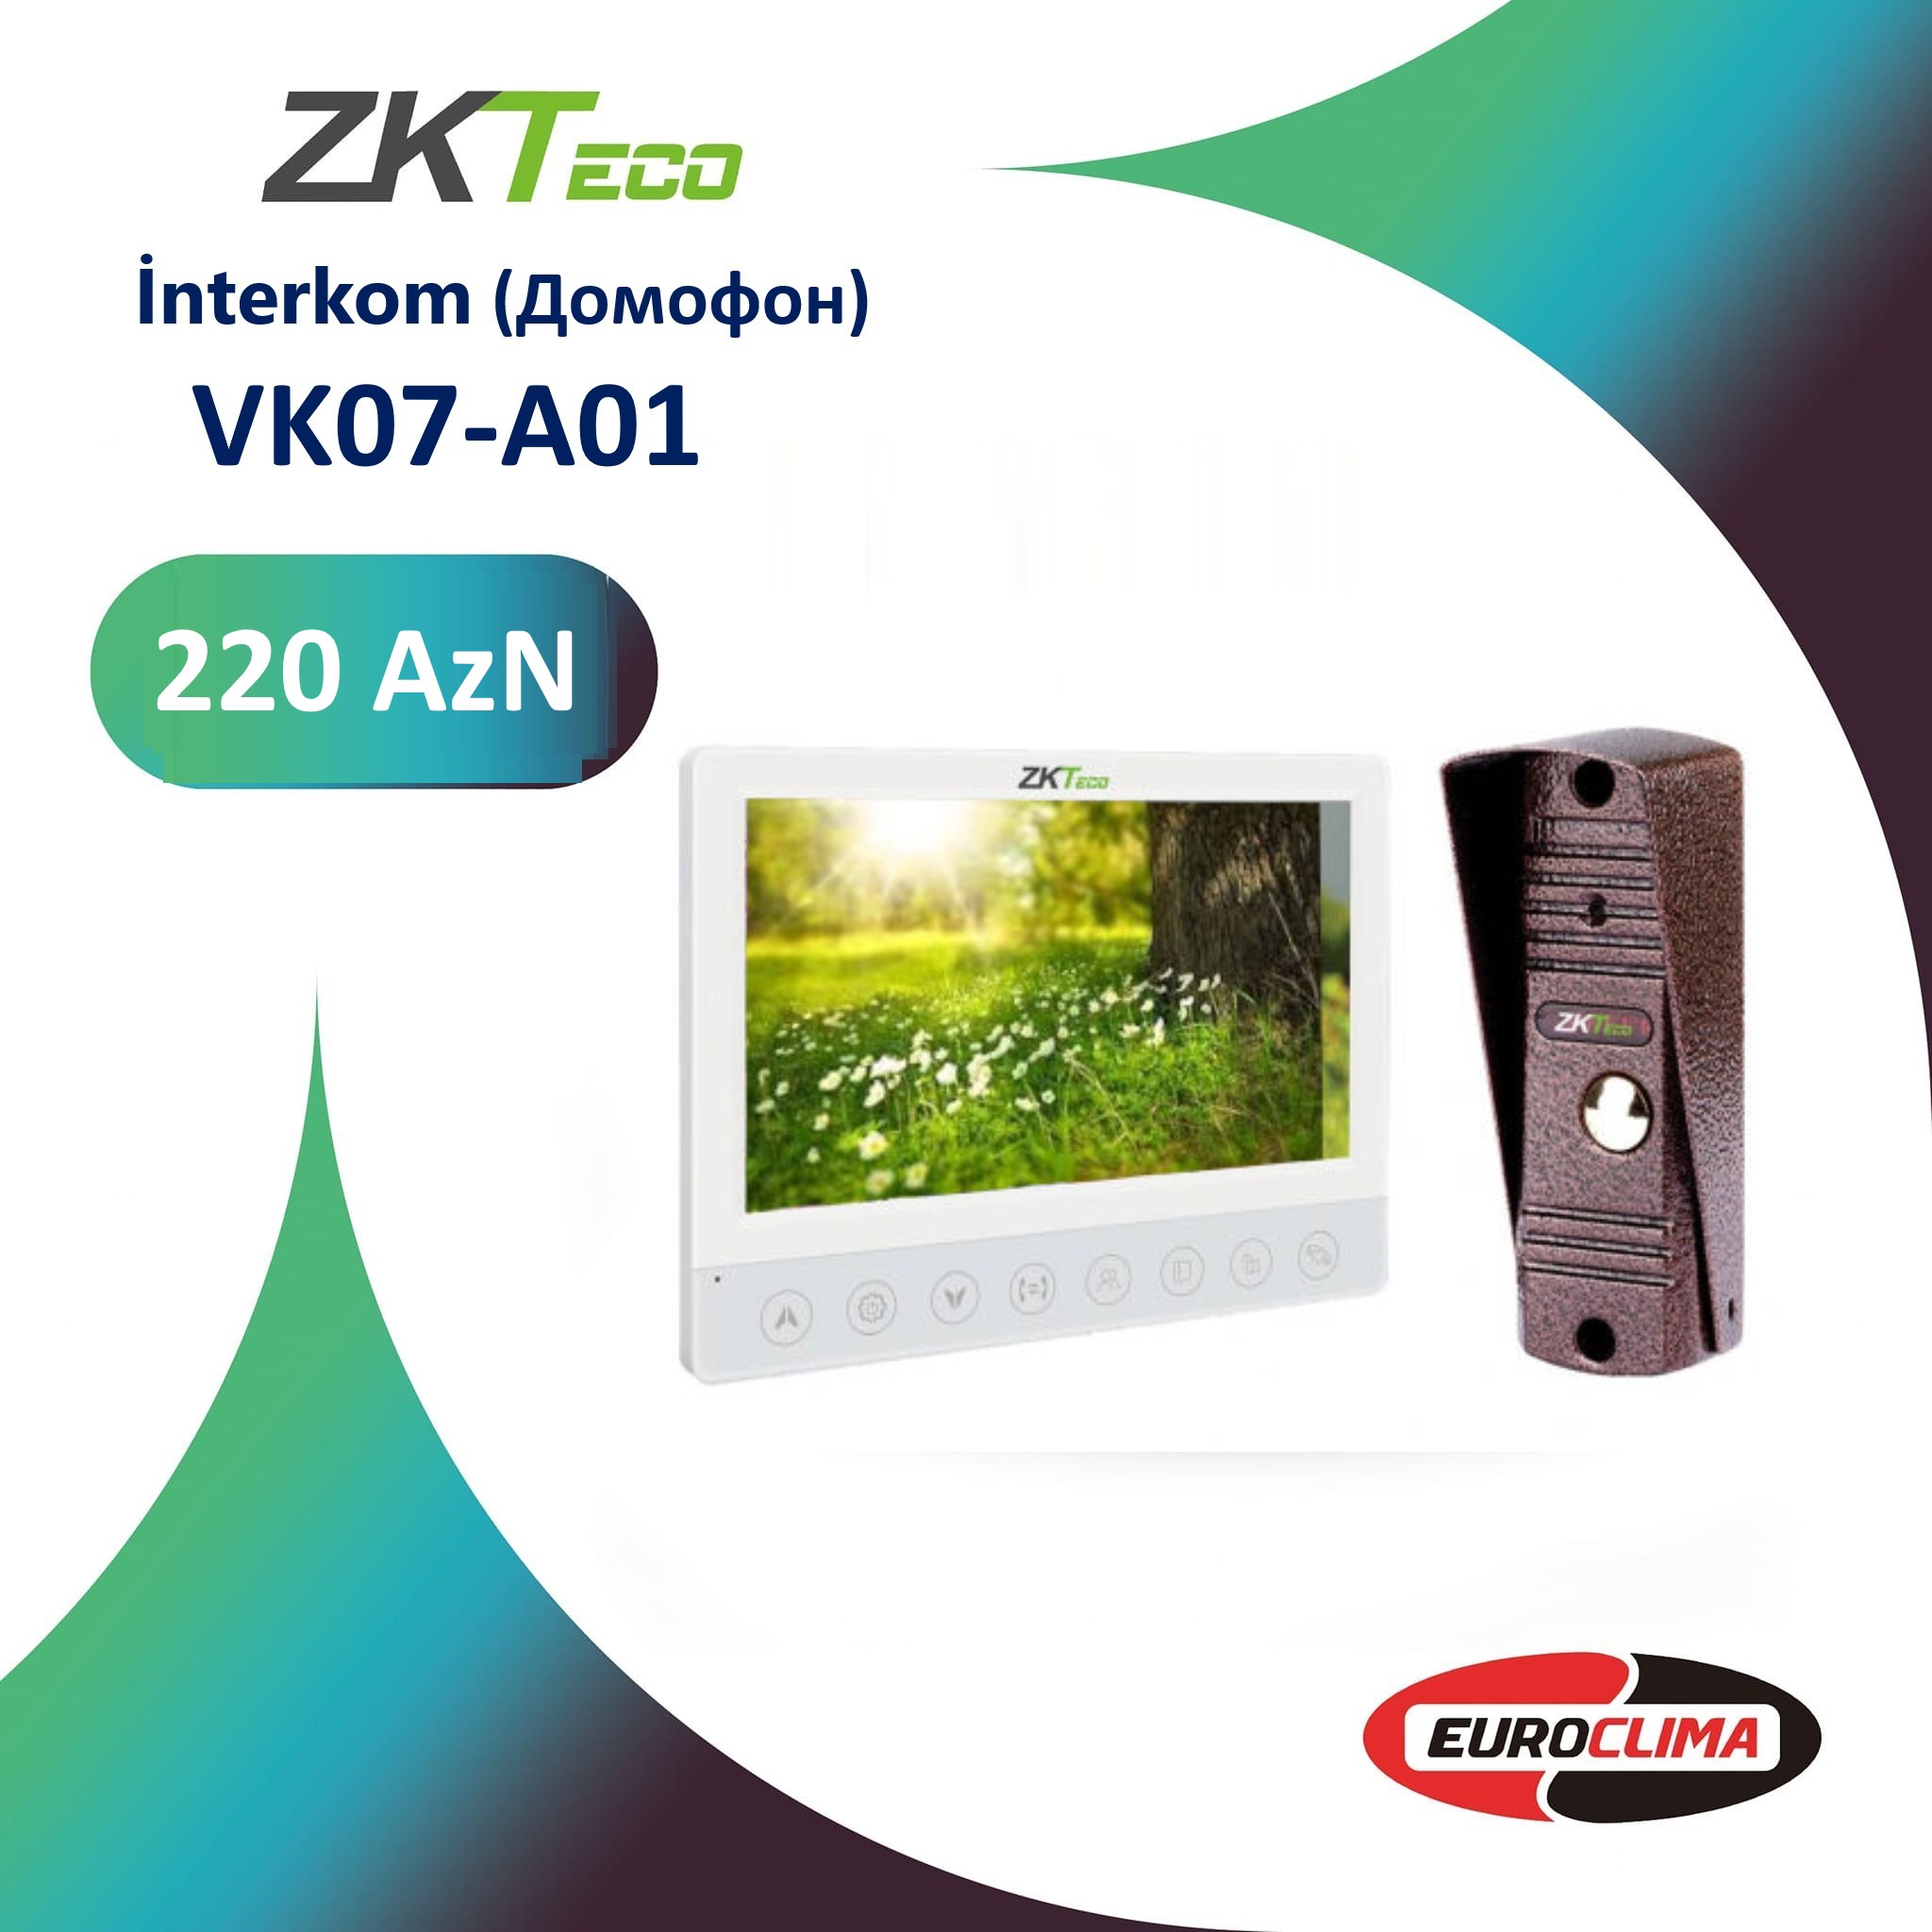 ZKTeco VK07-A01 interkom (Домофон).! qiyməti 220 manatdır.!